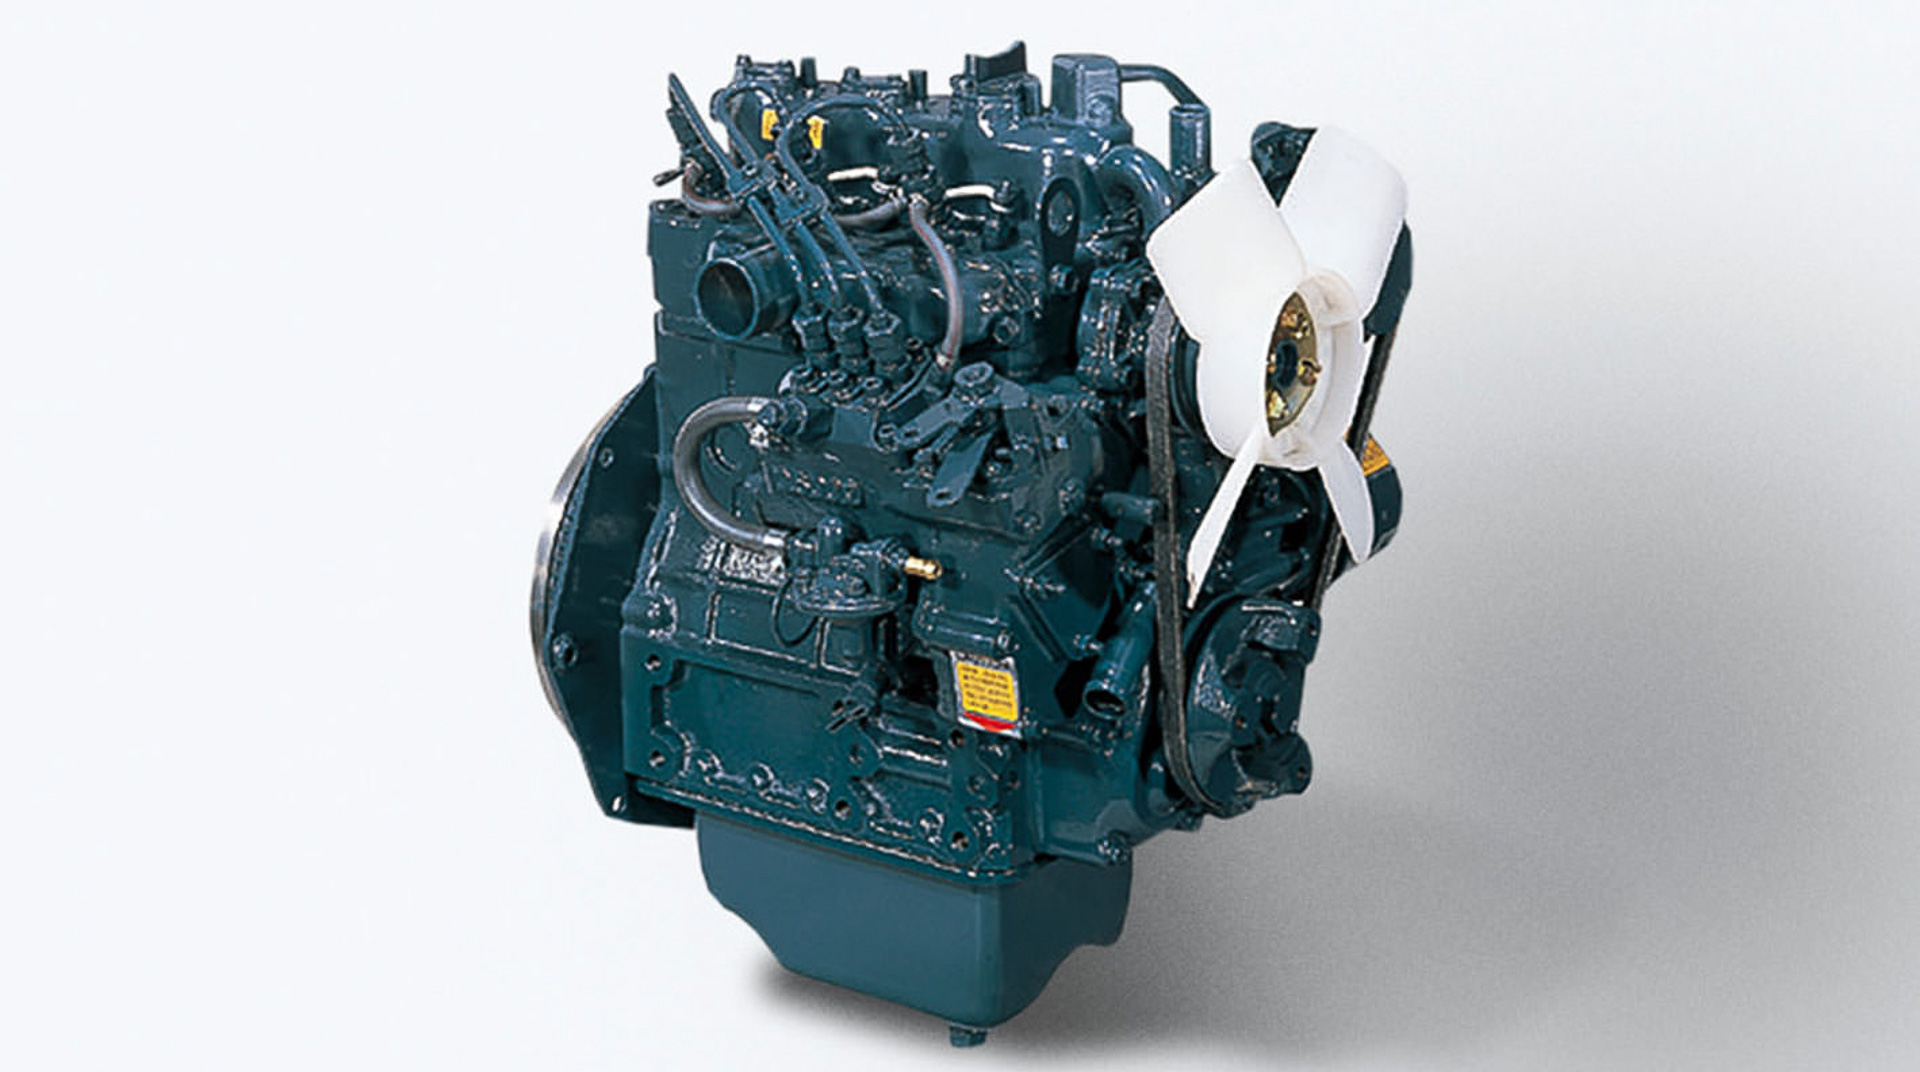 クボタ、エンジン事業100周年記念特設サイト「Kubota Engine Discovery」開設 - Car Watch